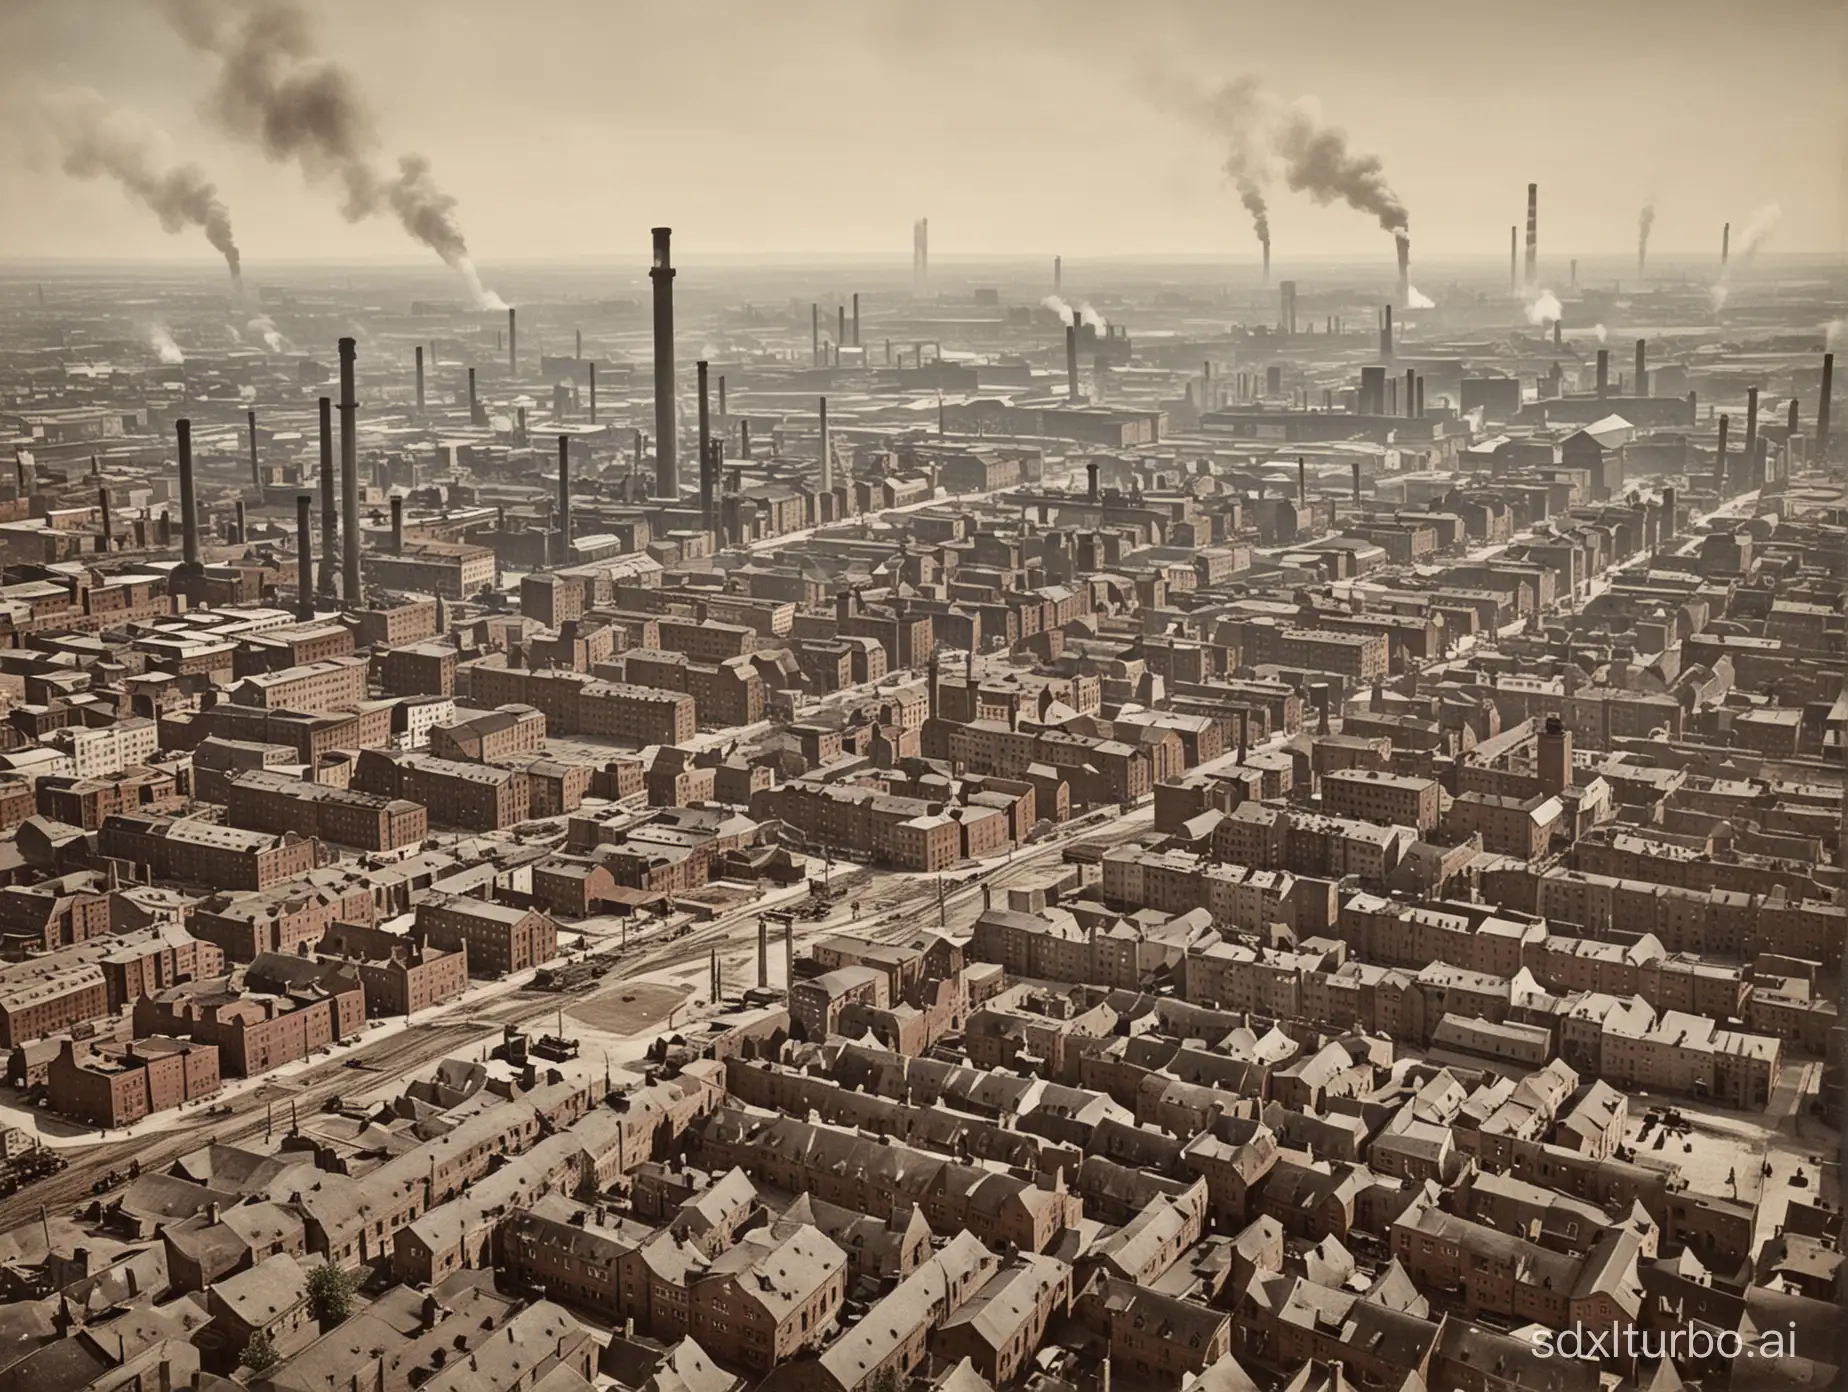 generiere ein bild von einem arbeiterviertel in einer fabrikstadt in deutschland während der industrialisierung im 19. jahrhundert